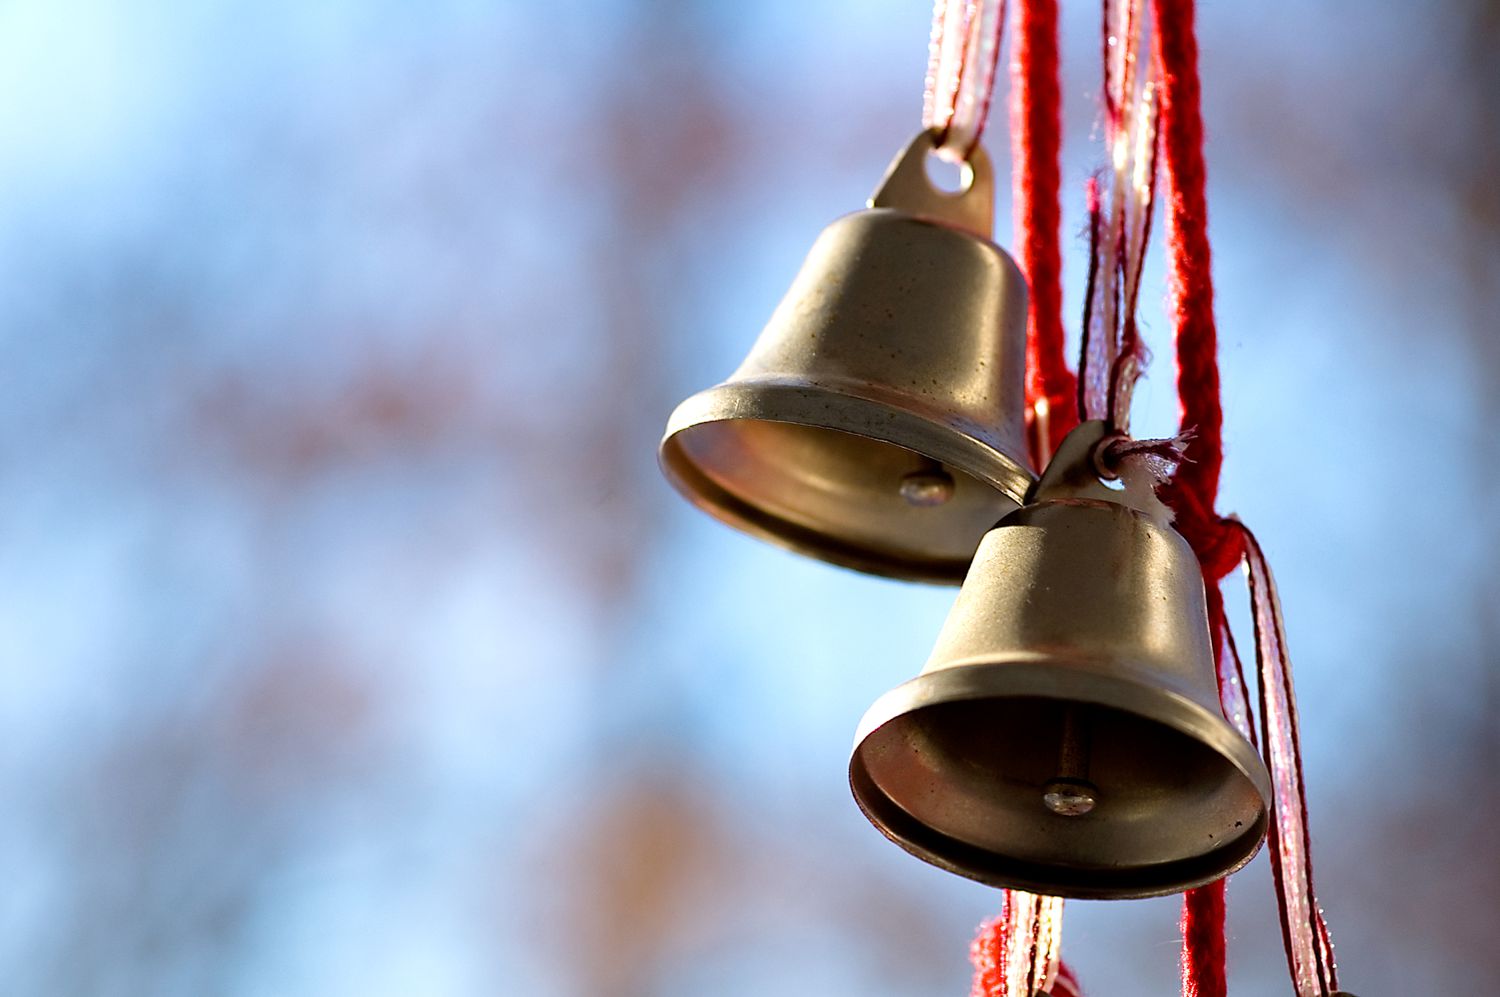 dos campanas de metal colgando de una cinta y un cordón rojos